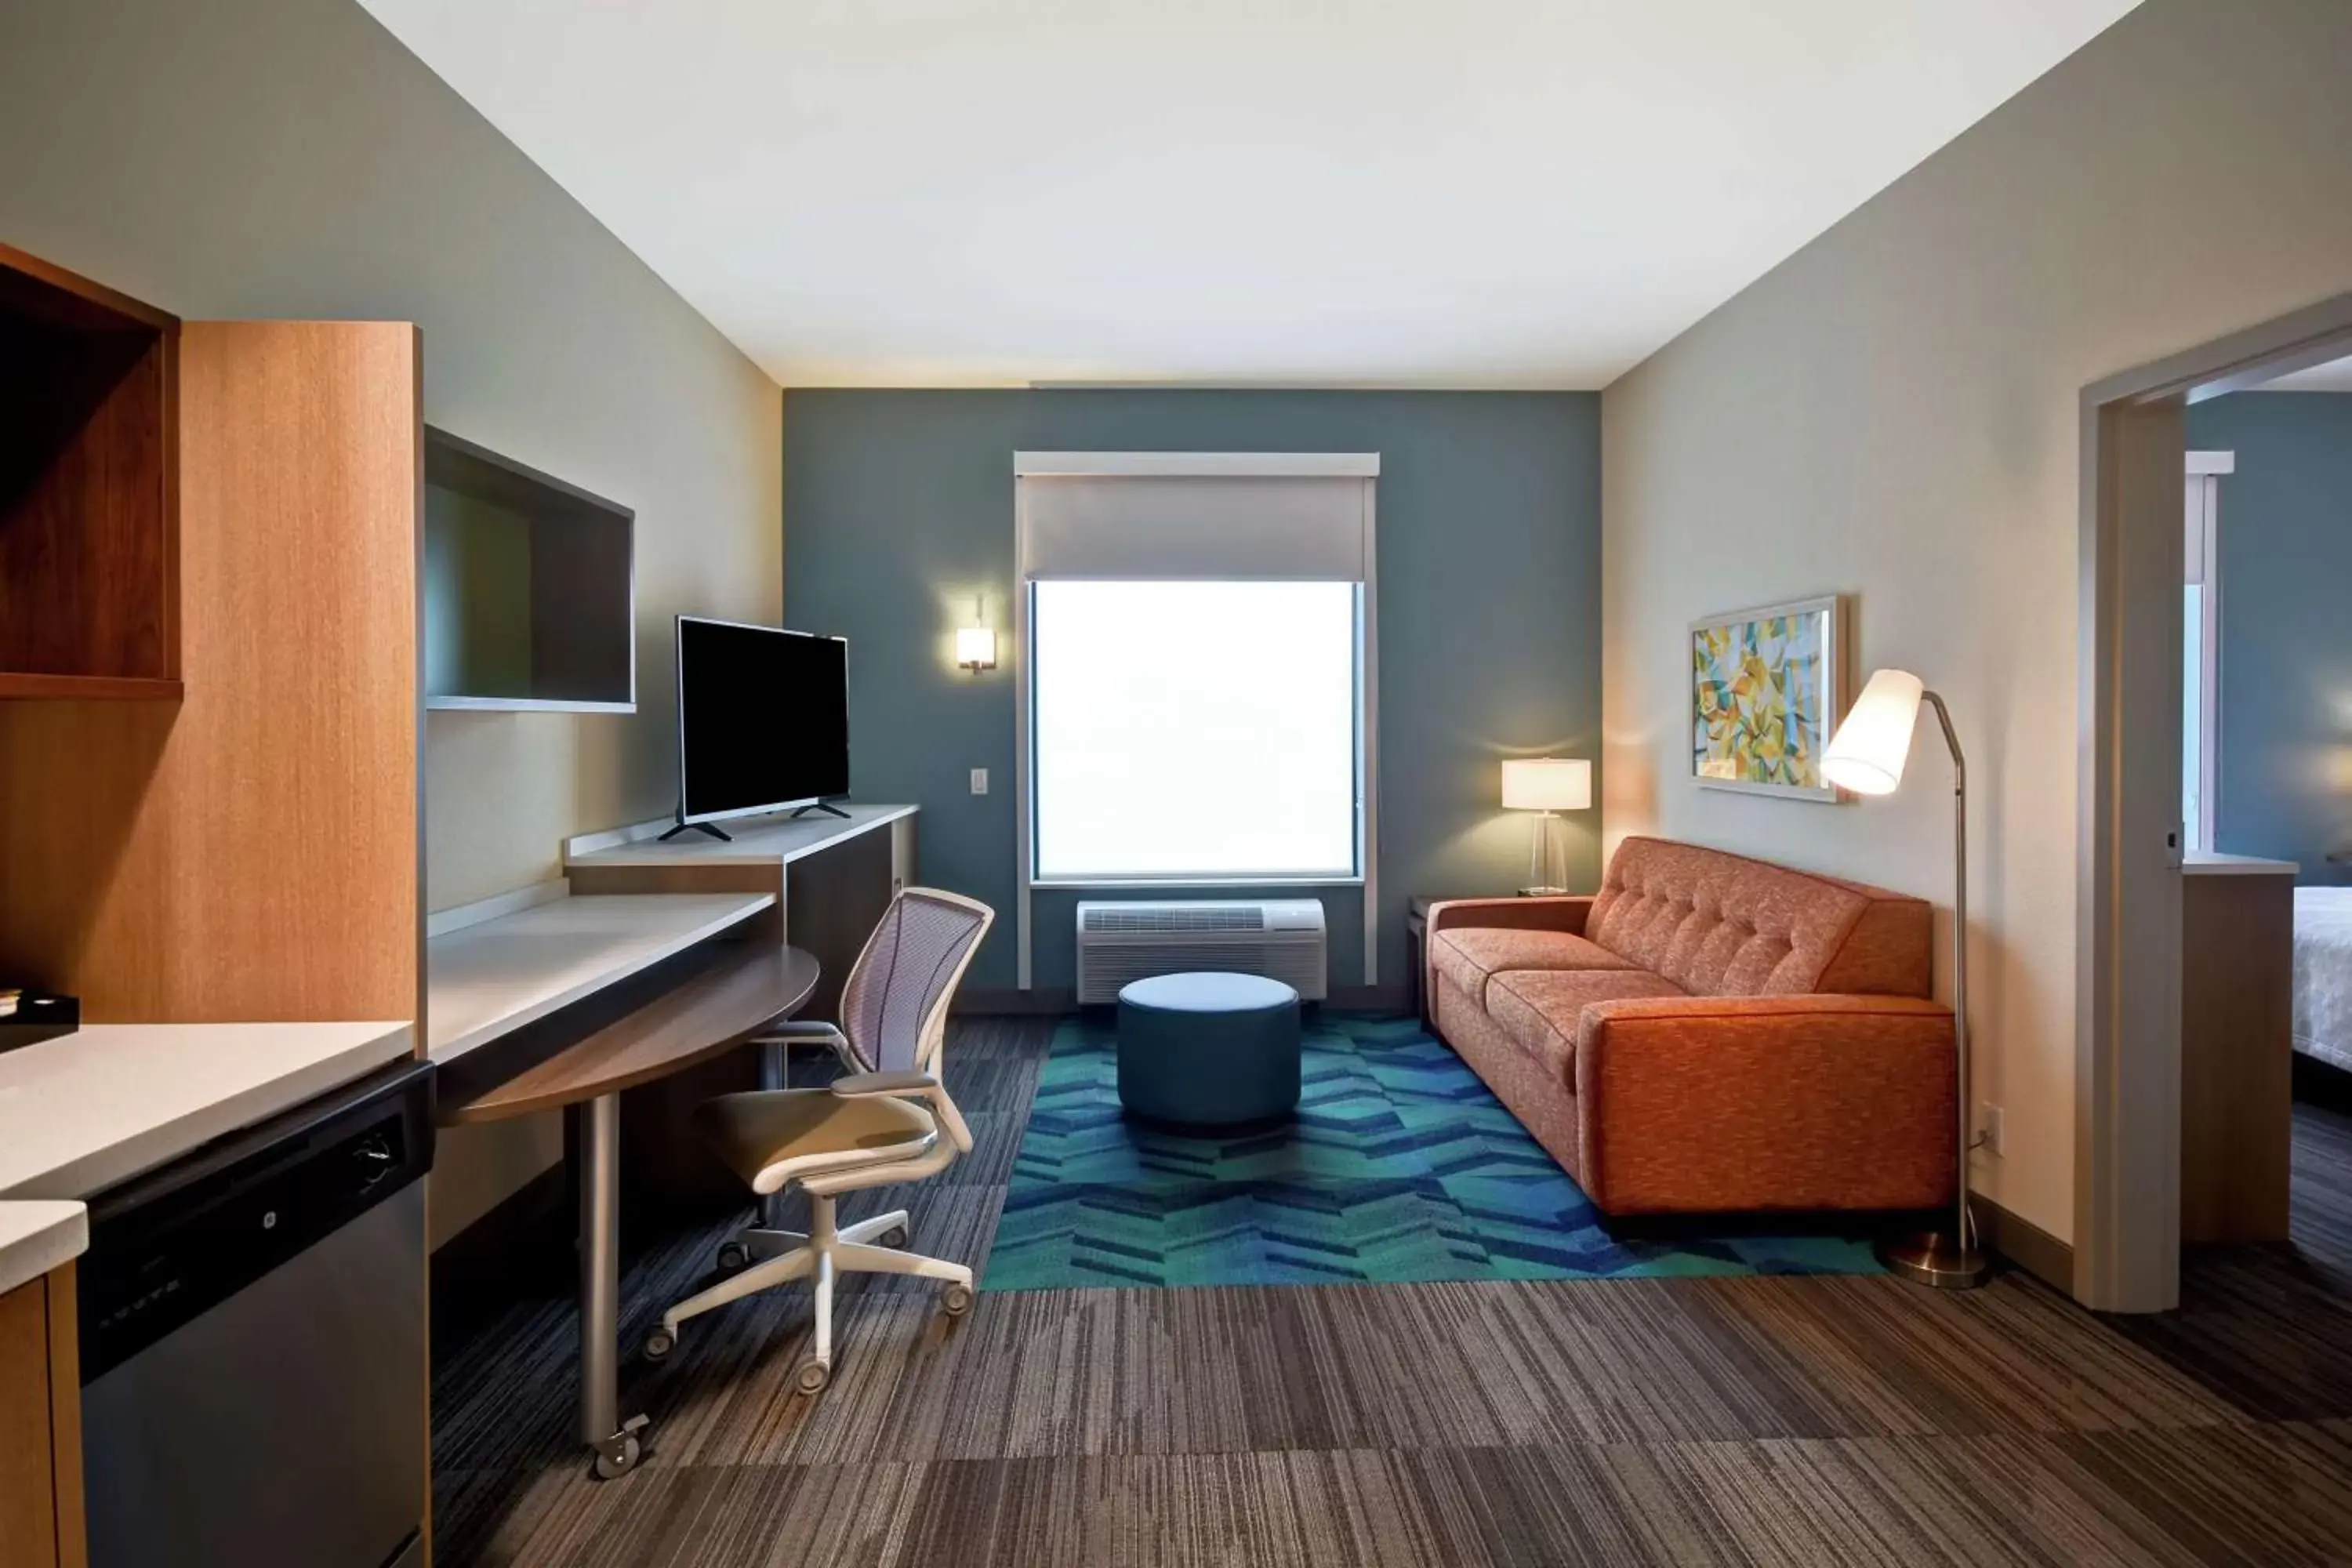 Bedroom, TV/Entertainment Center in Home2 Suites Mechanicsburg